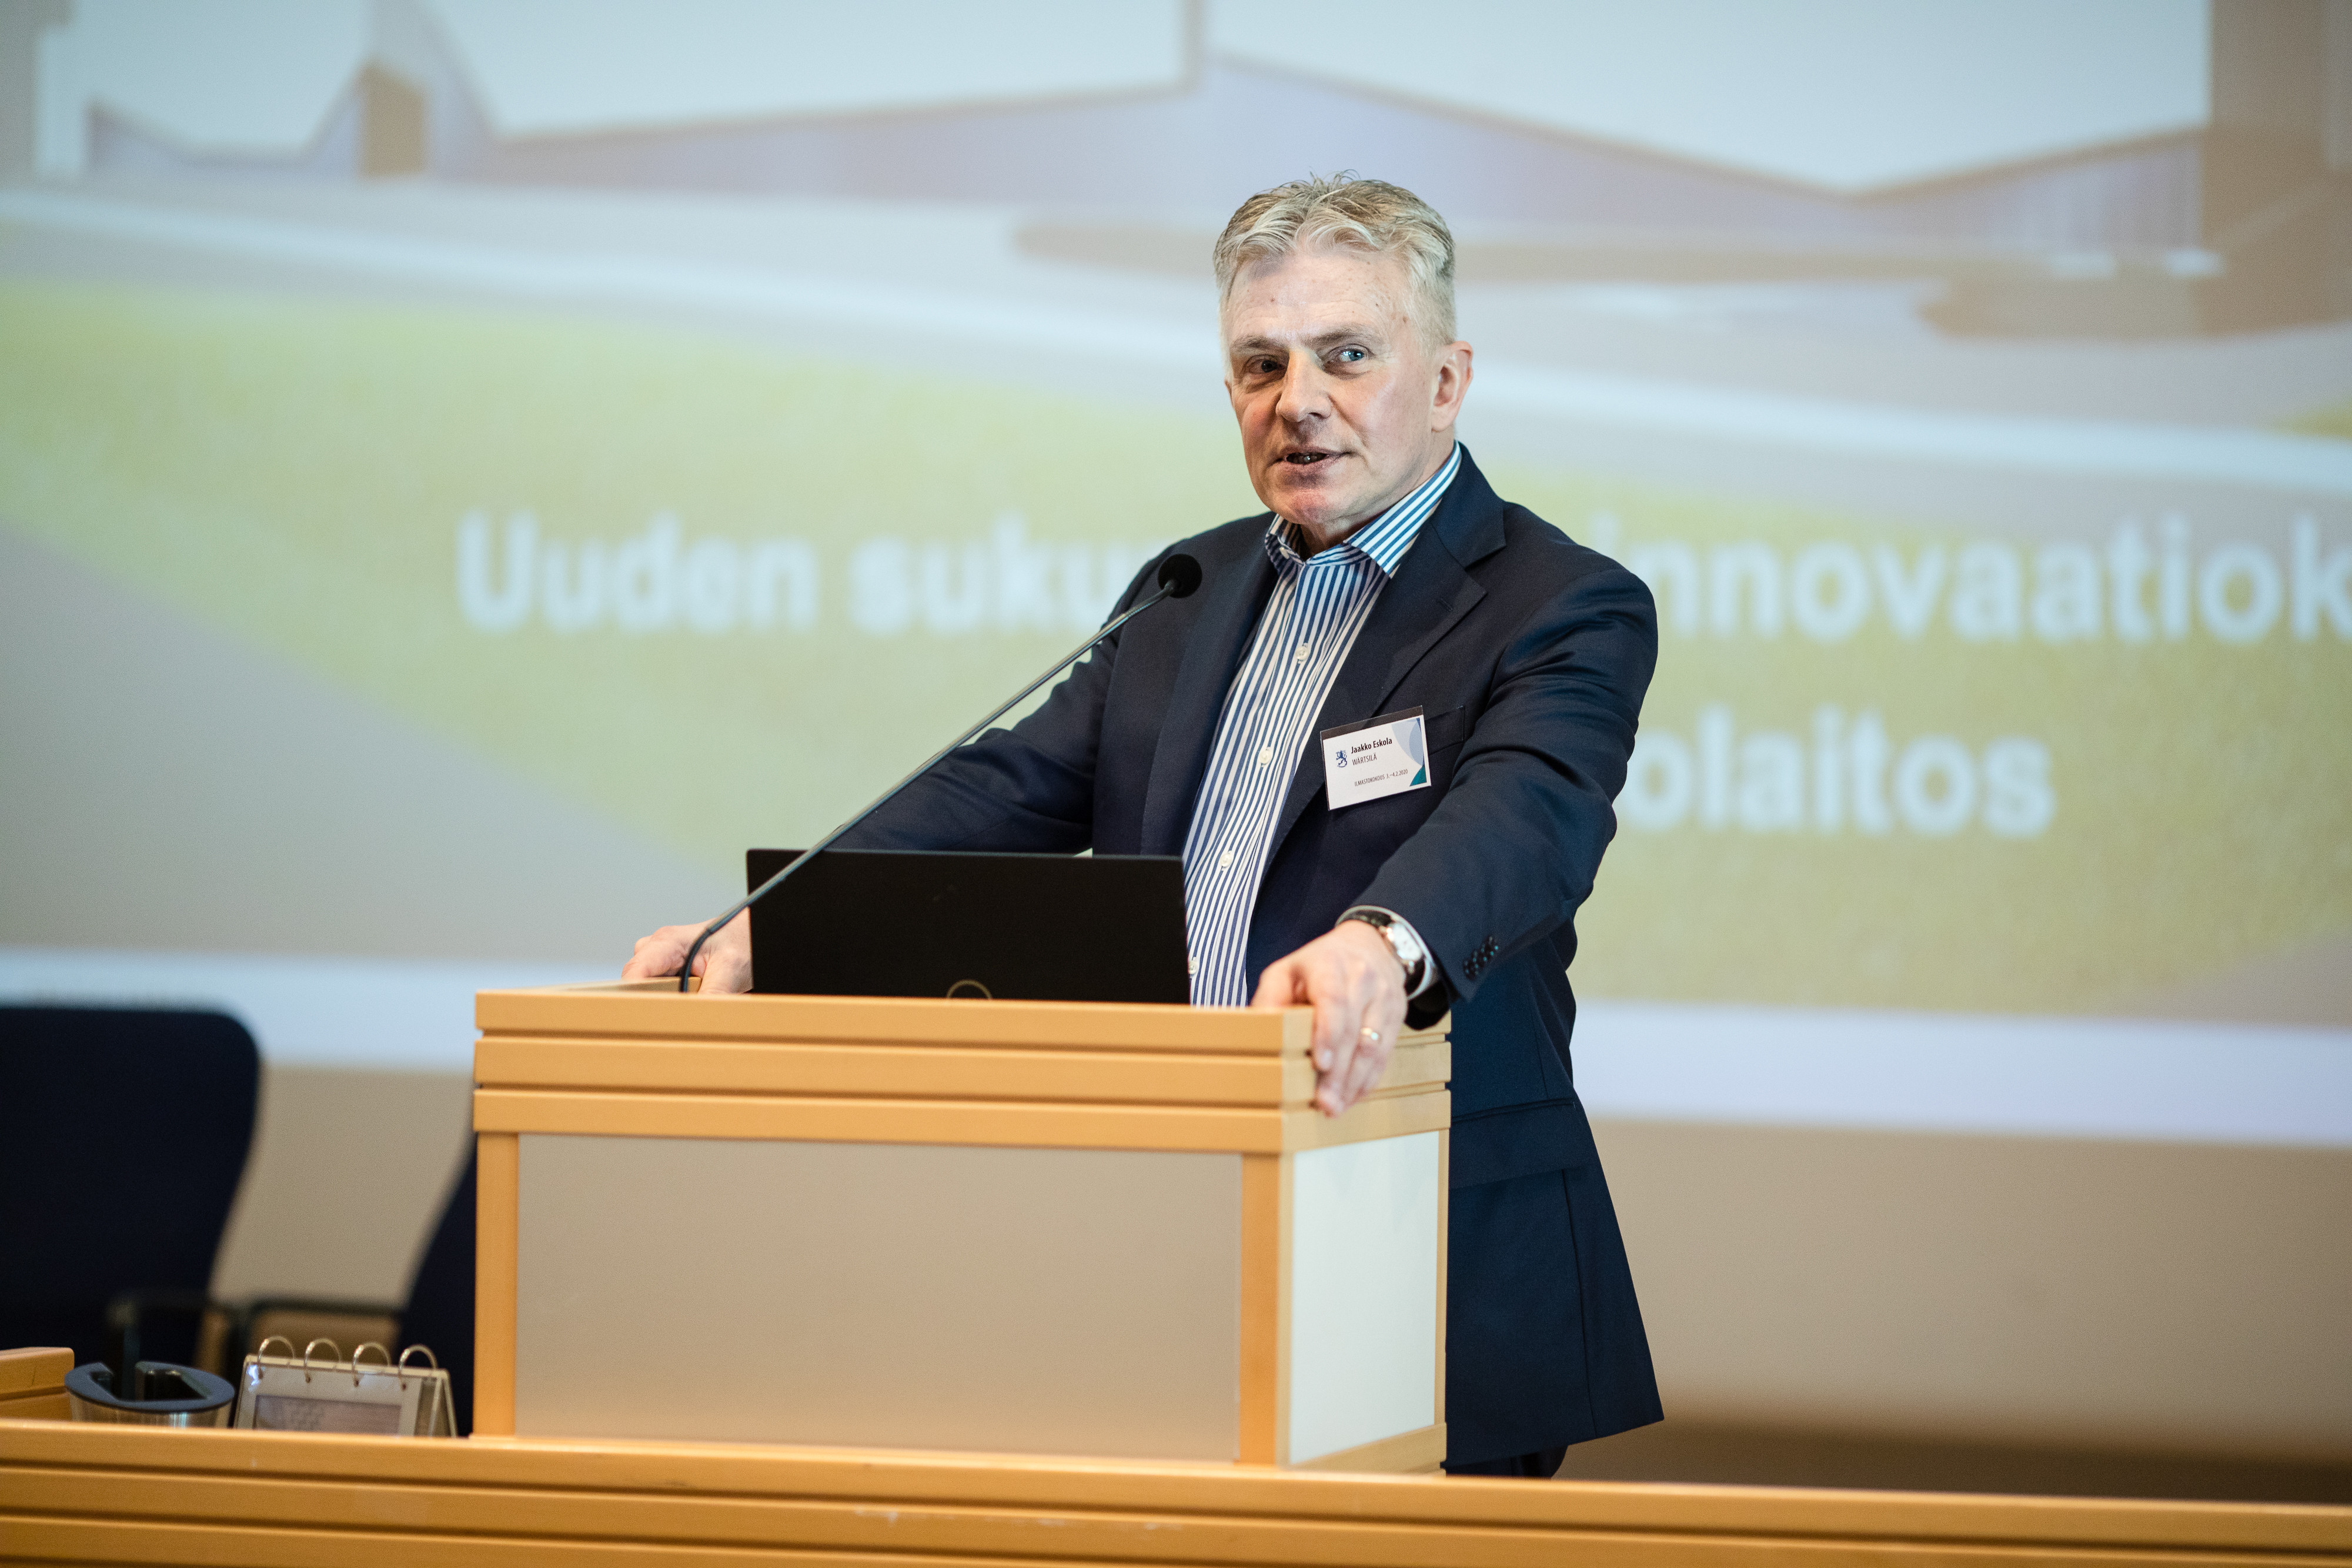 Wärtsilä's President & CEO, Jaakko Eskola awarded Finland's